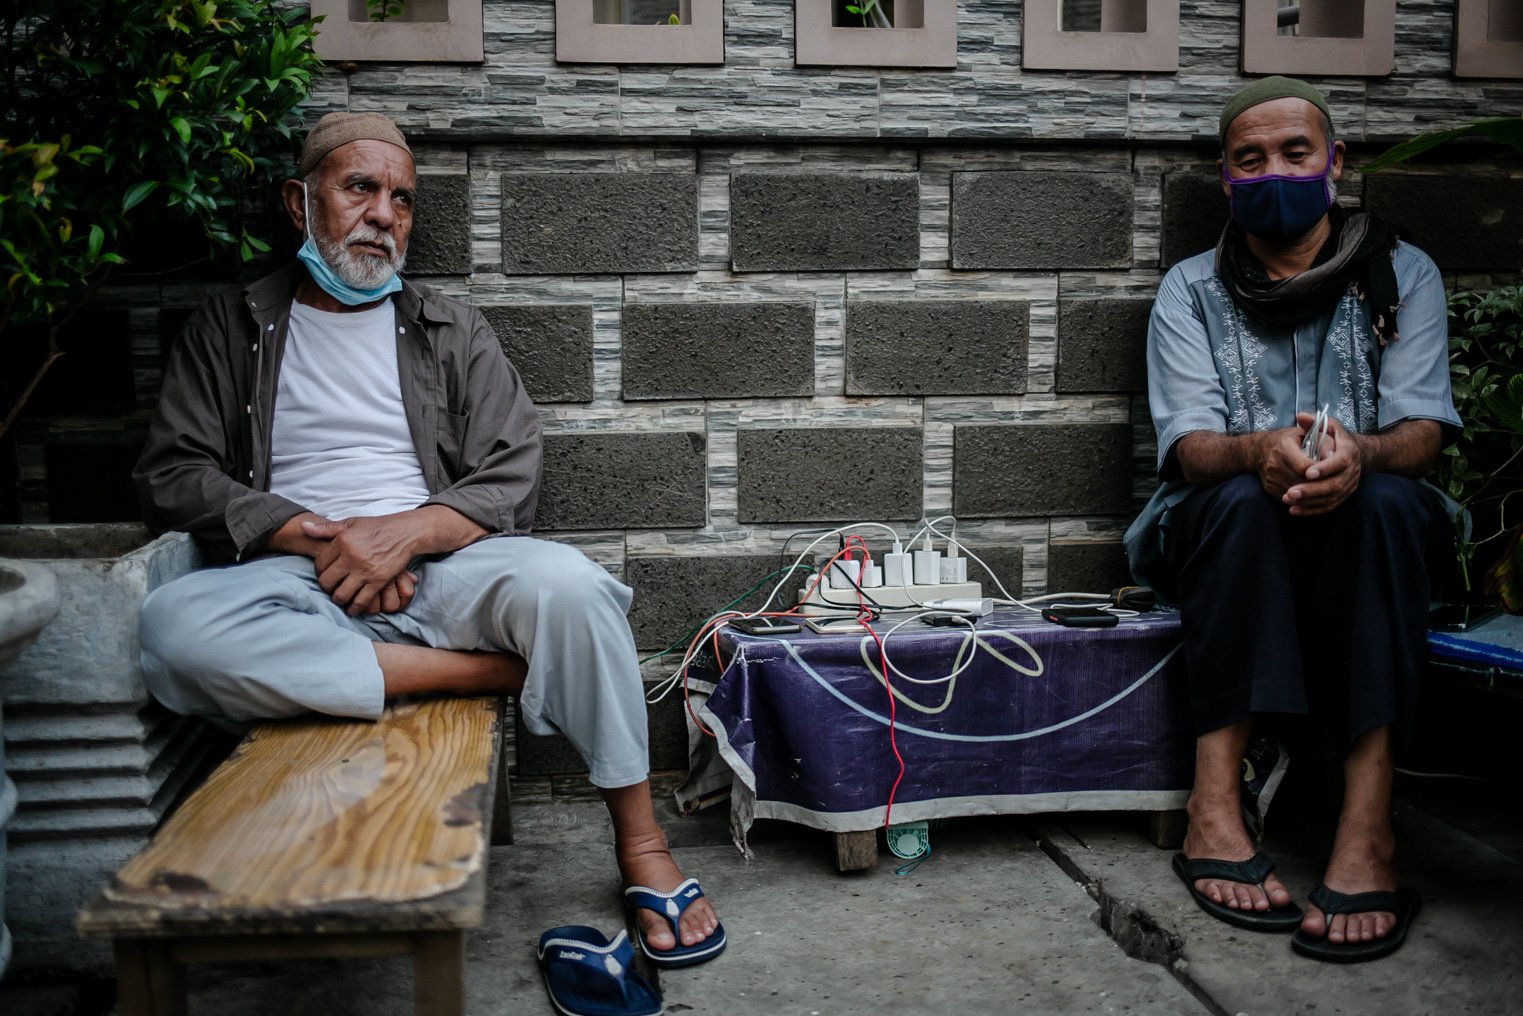 Pencari suaka asal Afghanistan mengisi baterai ponselnya di sumber listrik yang disalurkan dari rumah kosn-kosan warga yang berlokasi tak jauh dari tenda yang didirikannya sebagai bentuk protes mereka di samping Kantor Komisi Tinggi PBB untuk Pengungsi (UNHCR), Kebon Sirih, Jakarta, Jumat, (27/8/2021). Selama tinggal di Indonesia mereka kerap berpindah-pindah, Beberapa tahun lalu, para penacri suaka melarikan diri dari Kabul, Afghanistan akibat konflik berkepanjangan dan ketakutan terhadap milisi bersenjata